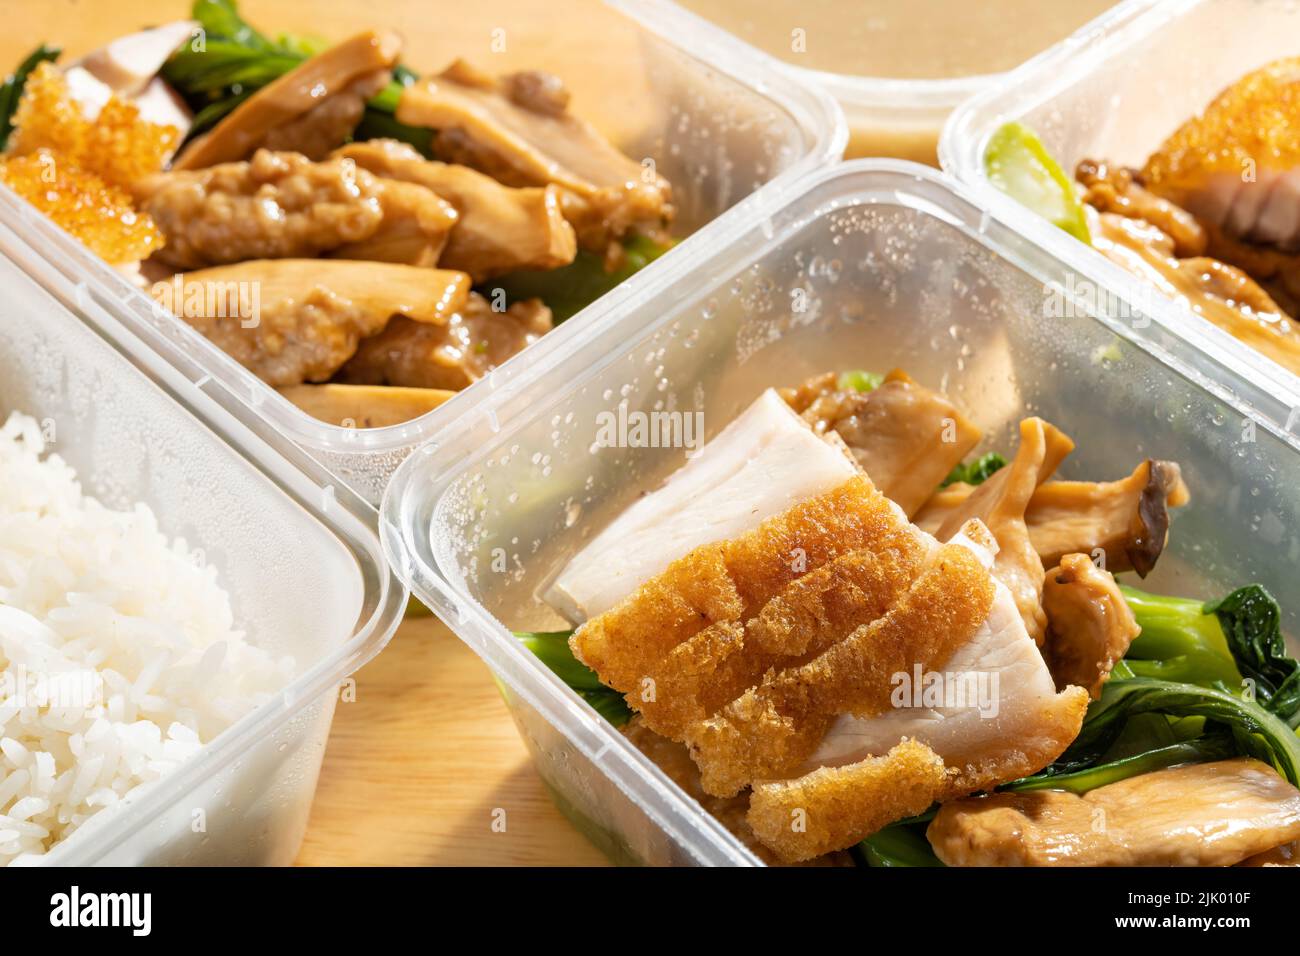 Vue en angle fast food avec des porks au barbecue et des légumes, du riz et de la soupe sucrée Banque D'Images